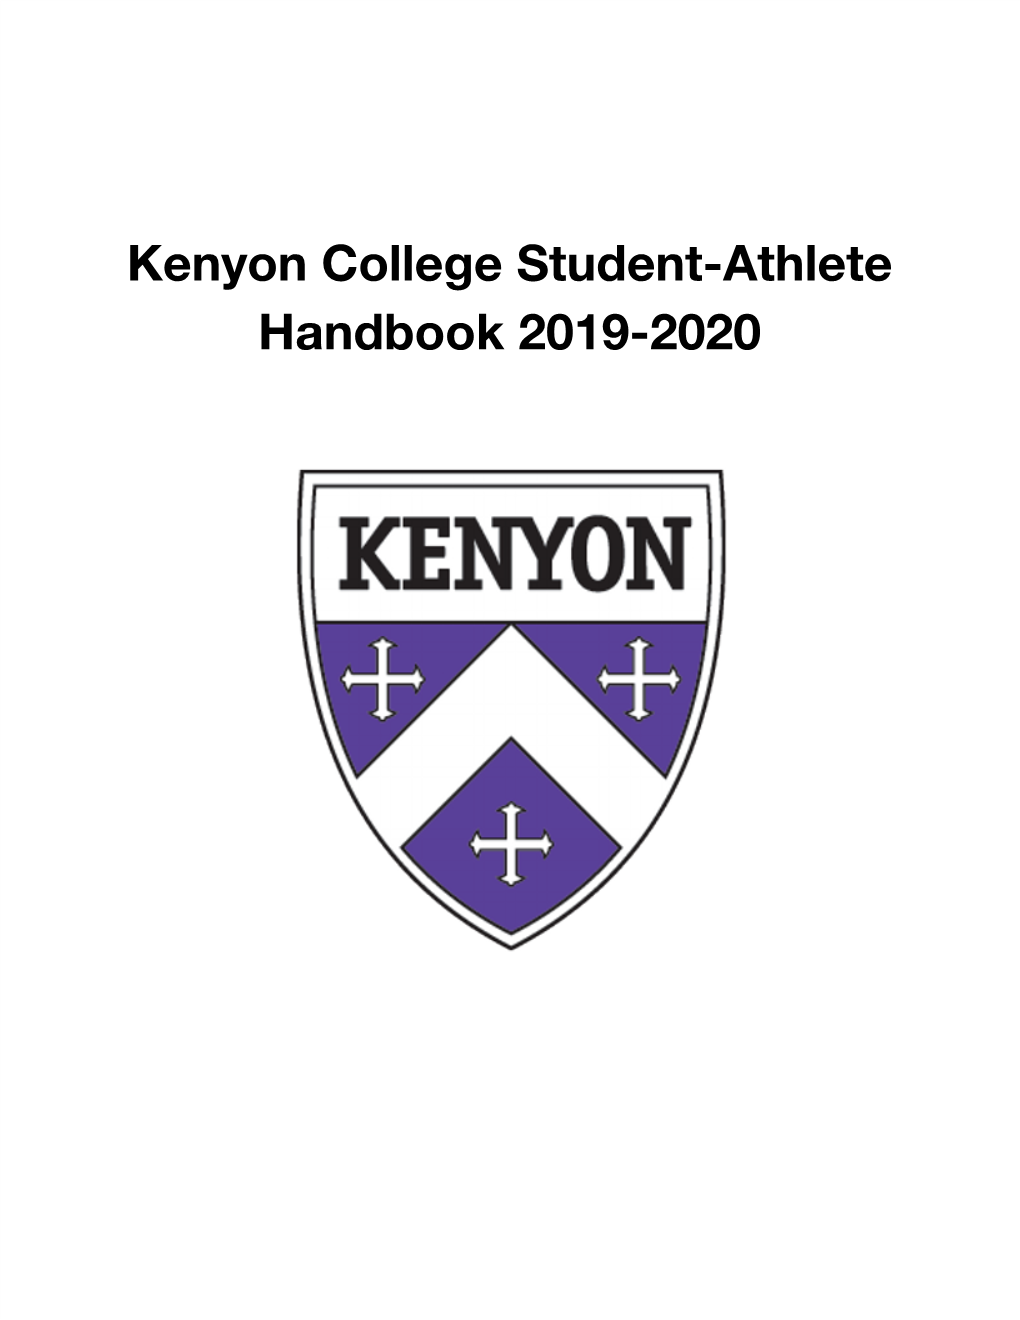 Kenyon College Student-Athlete Handbook 2019-2020